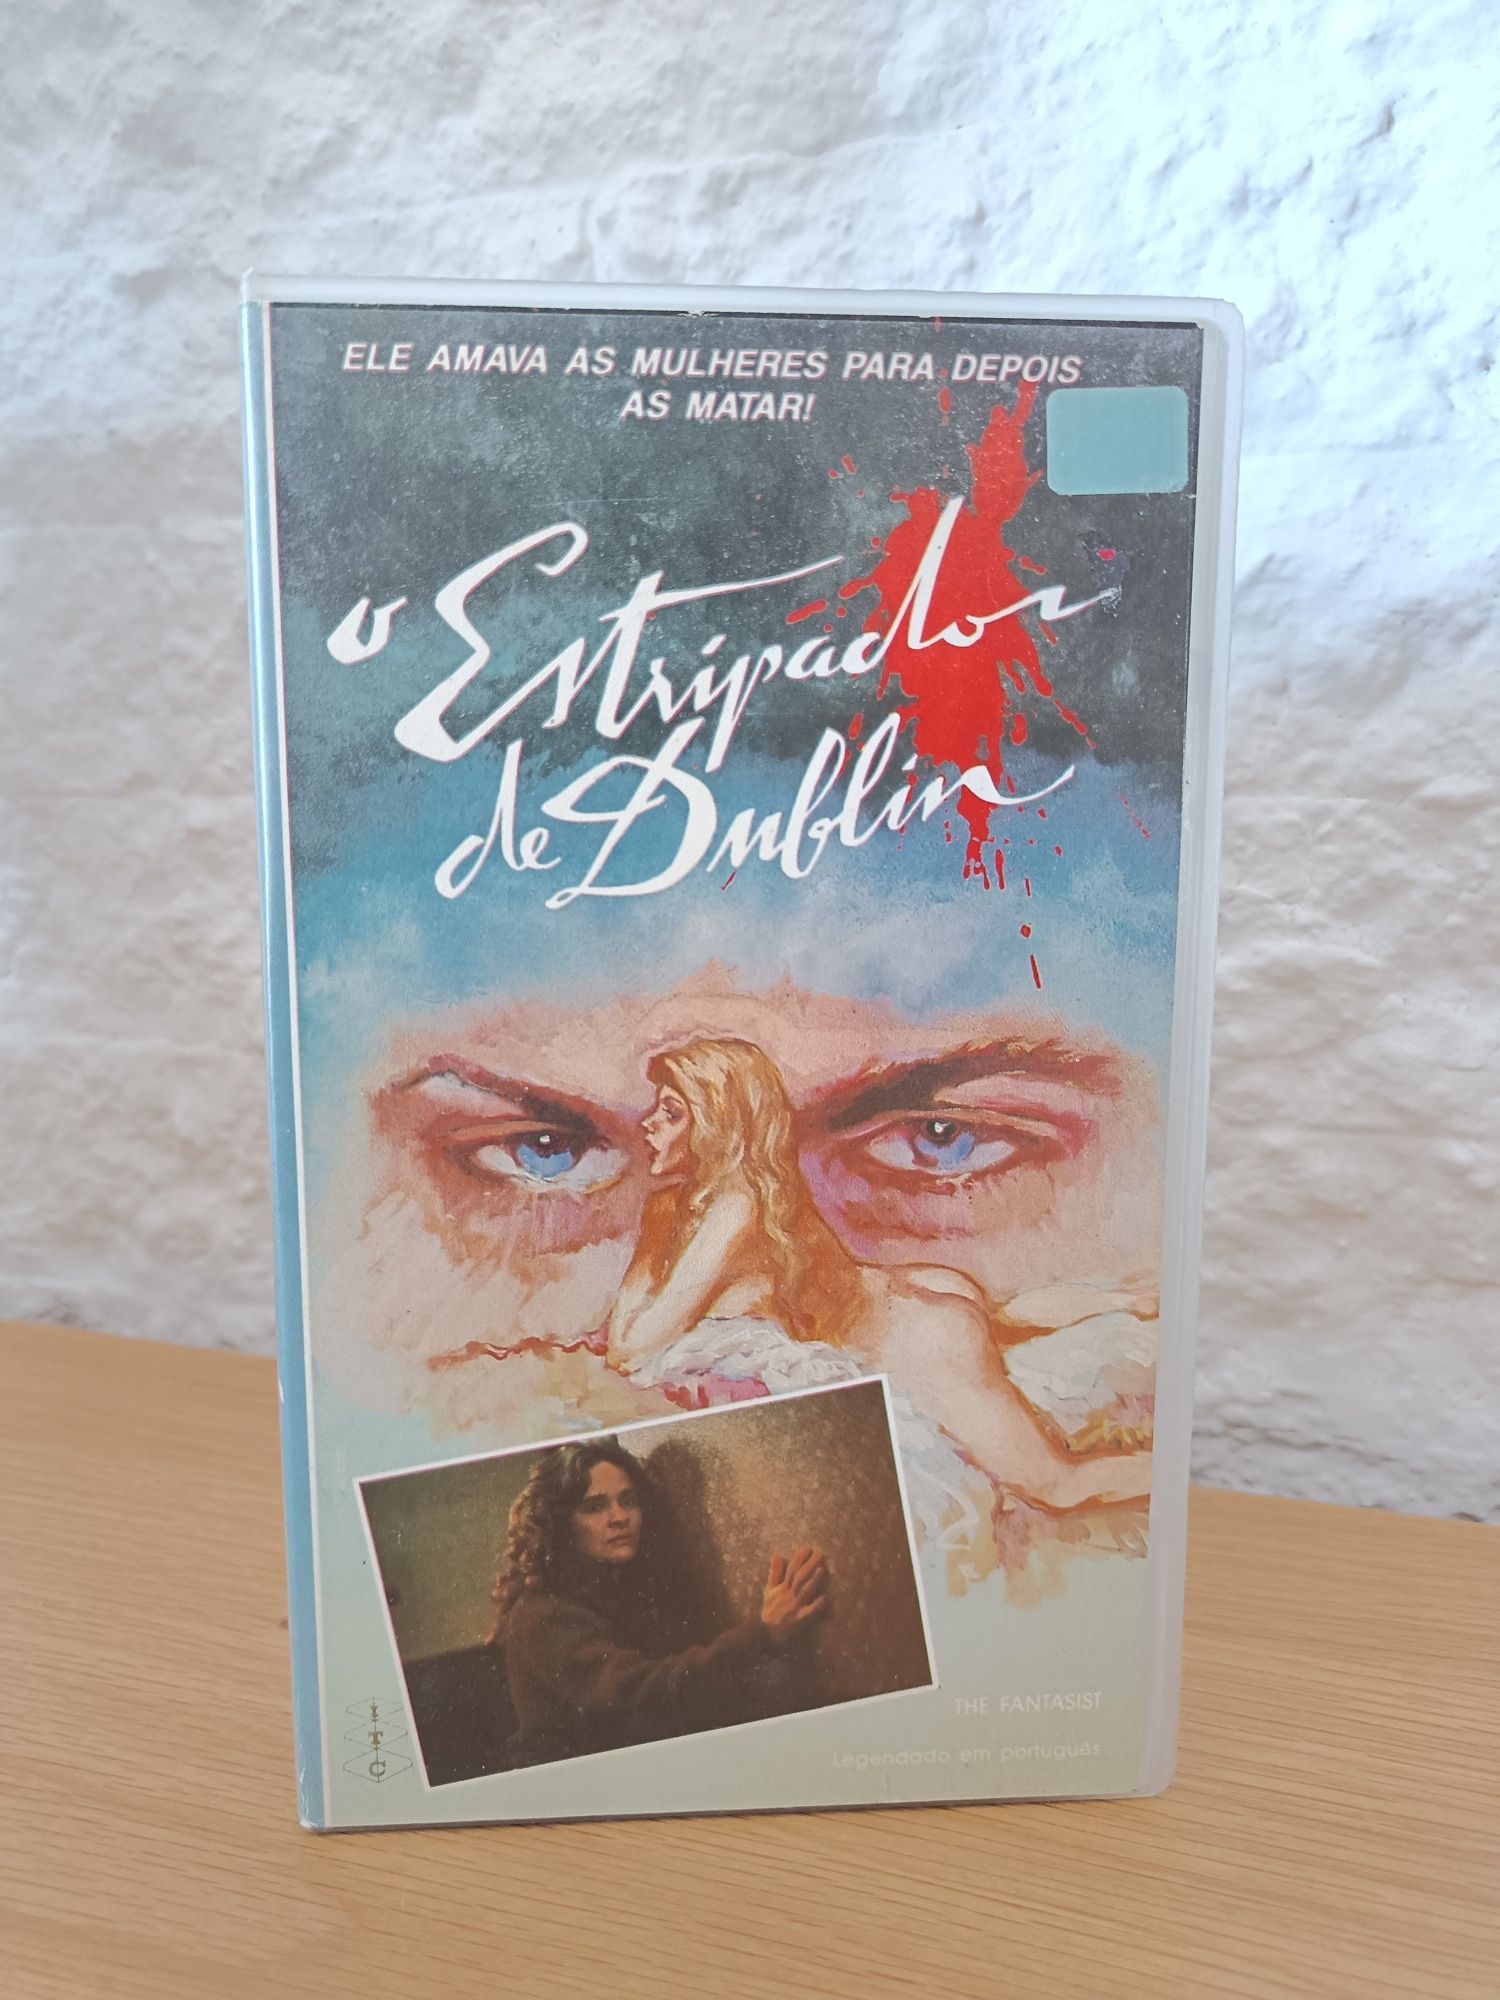 Filme VHS O Estripador de Dublin (The Fantasist)